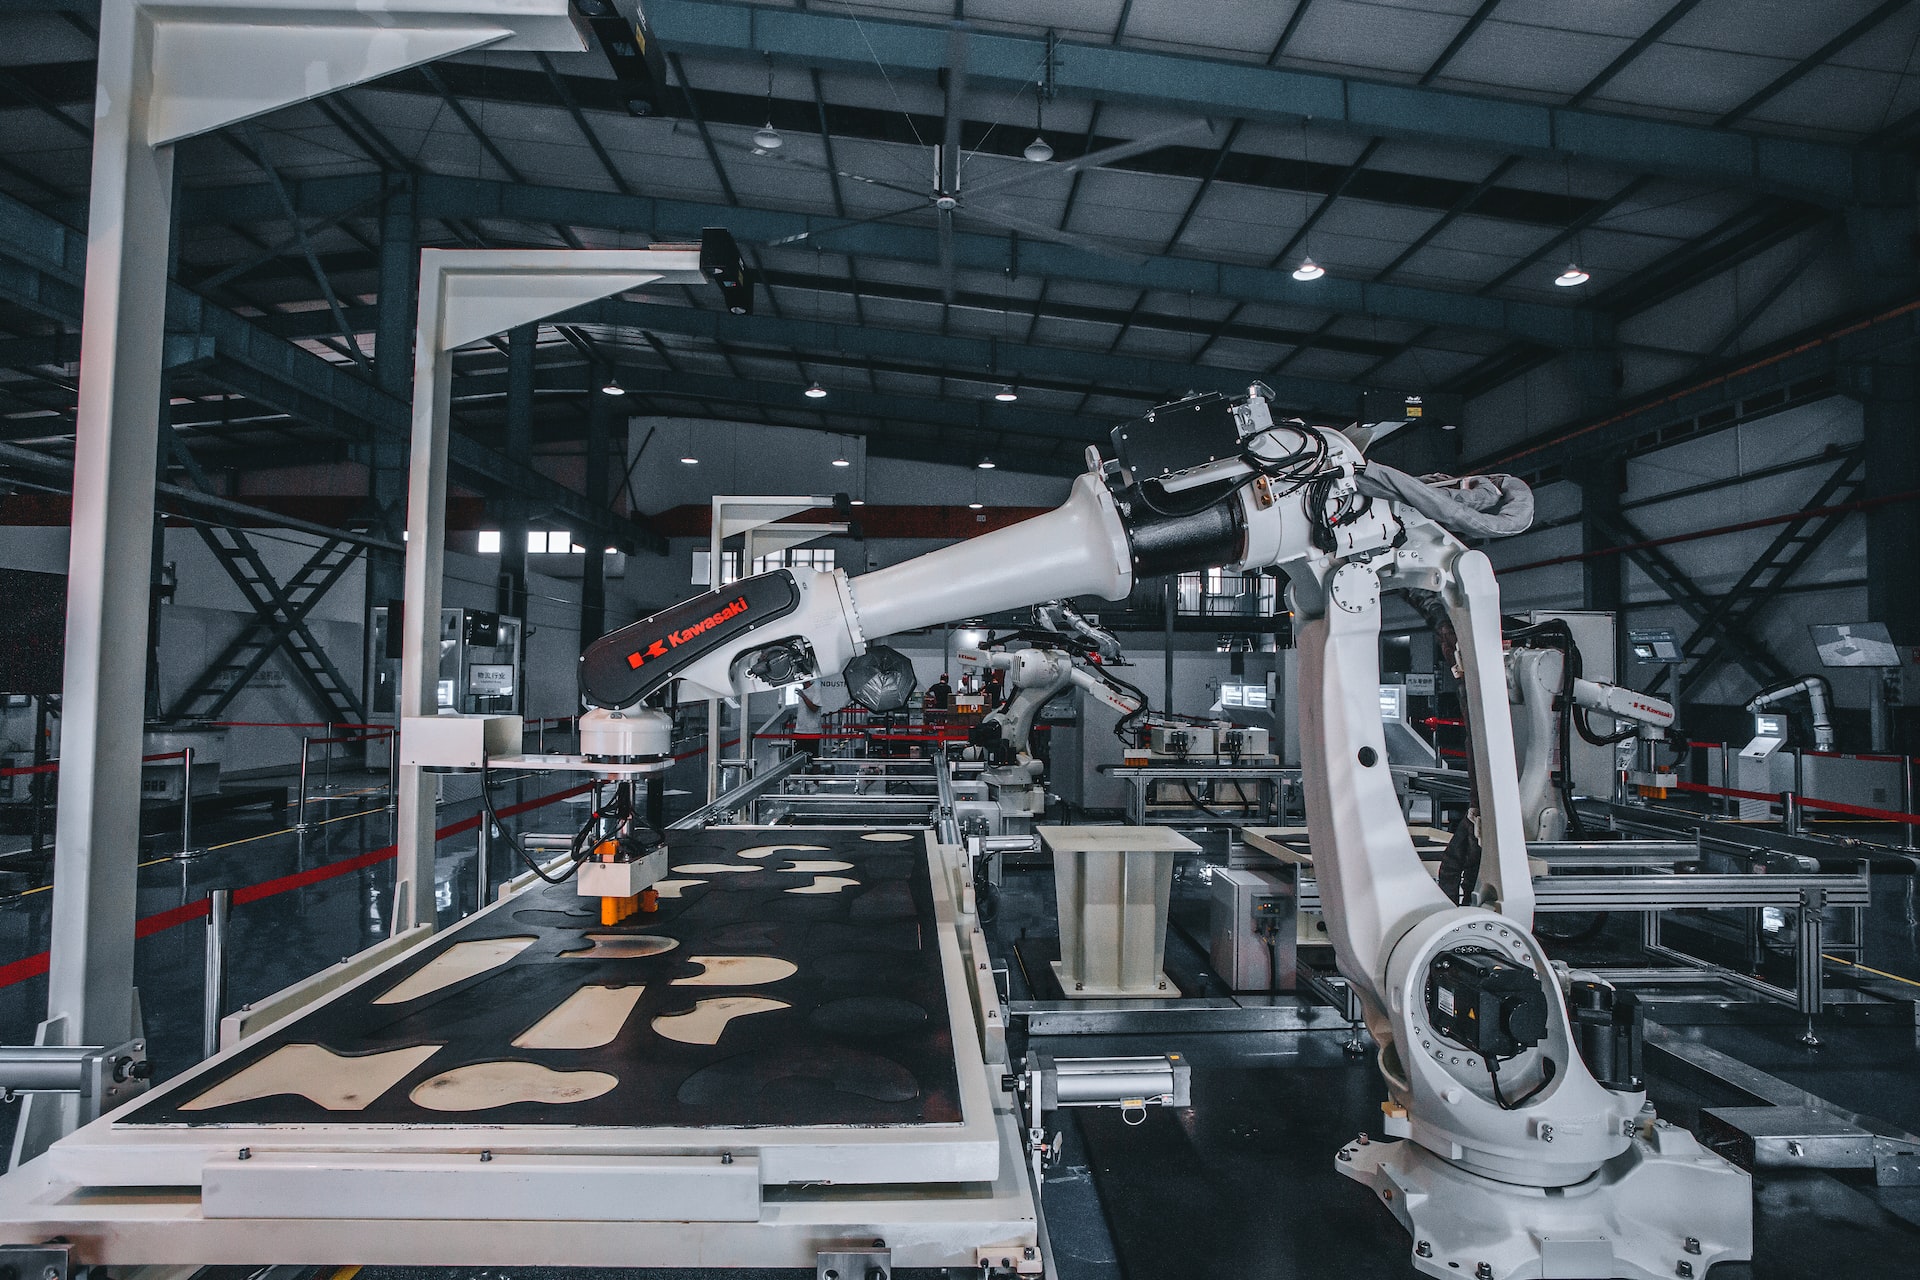 Ipari robotok és társadalmi problémák